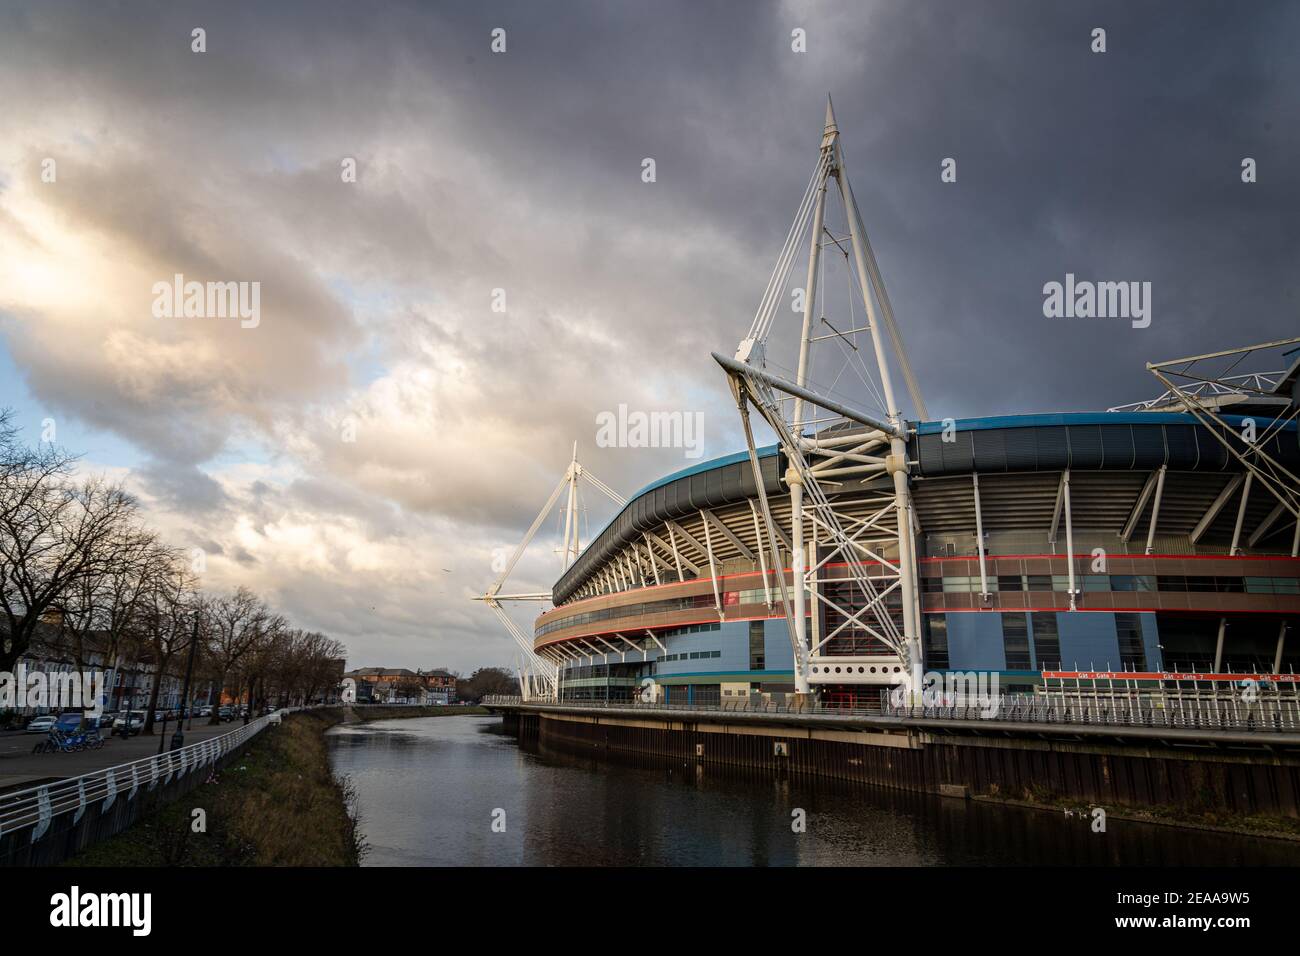 Cardiff, Galles - 8 Febbraio 2021: Veduta generale del Principato e del fiume Taff, Cardiff, sede della squadra gallese di rugby Foto Stock